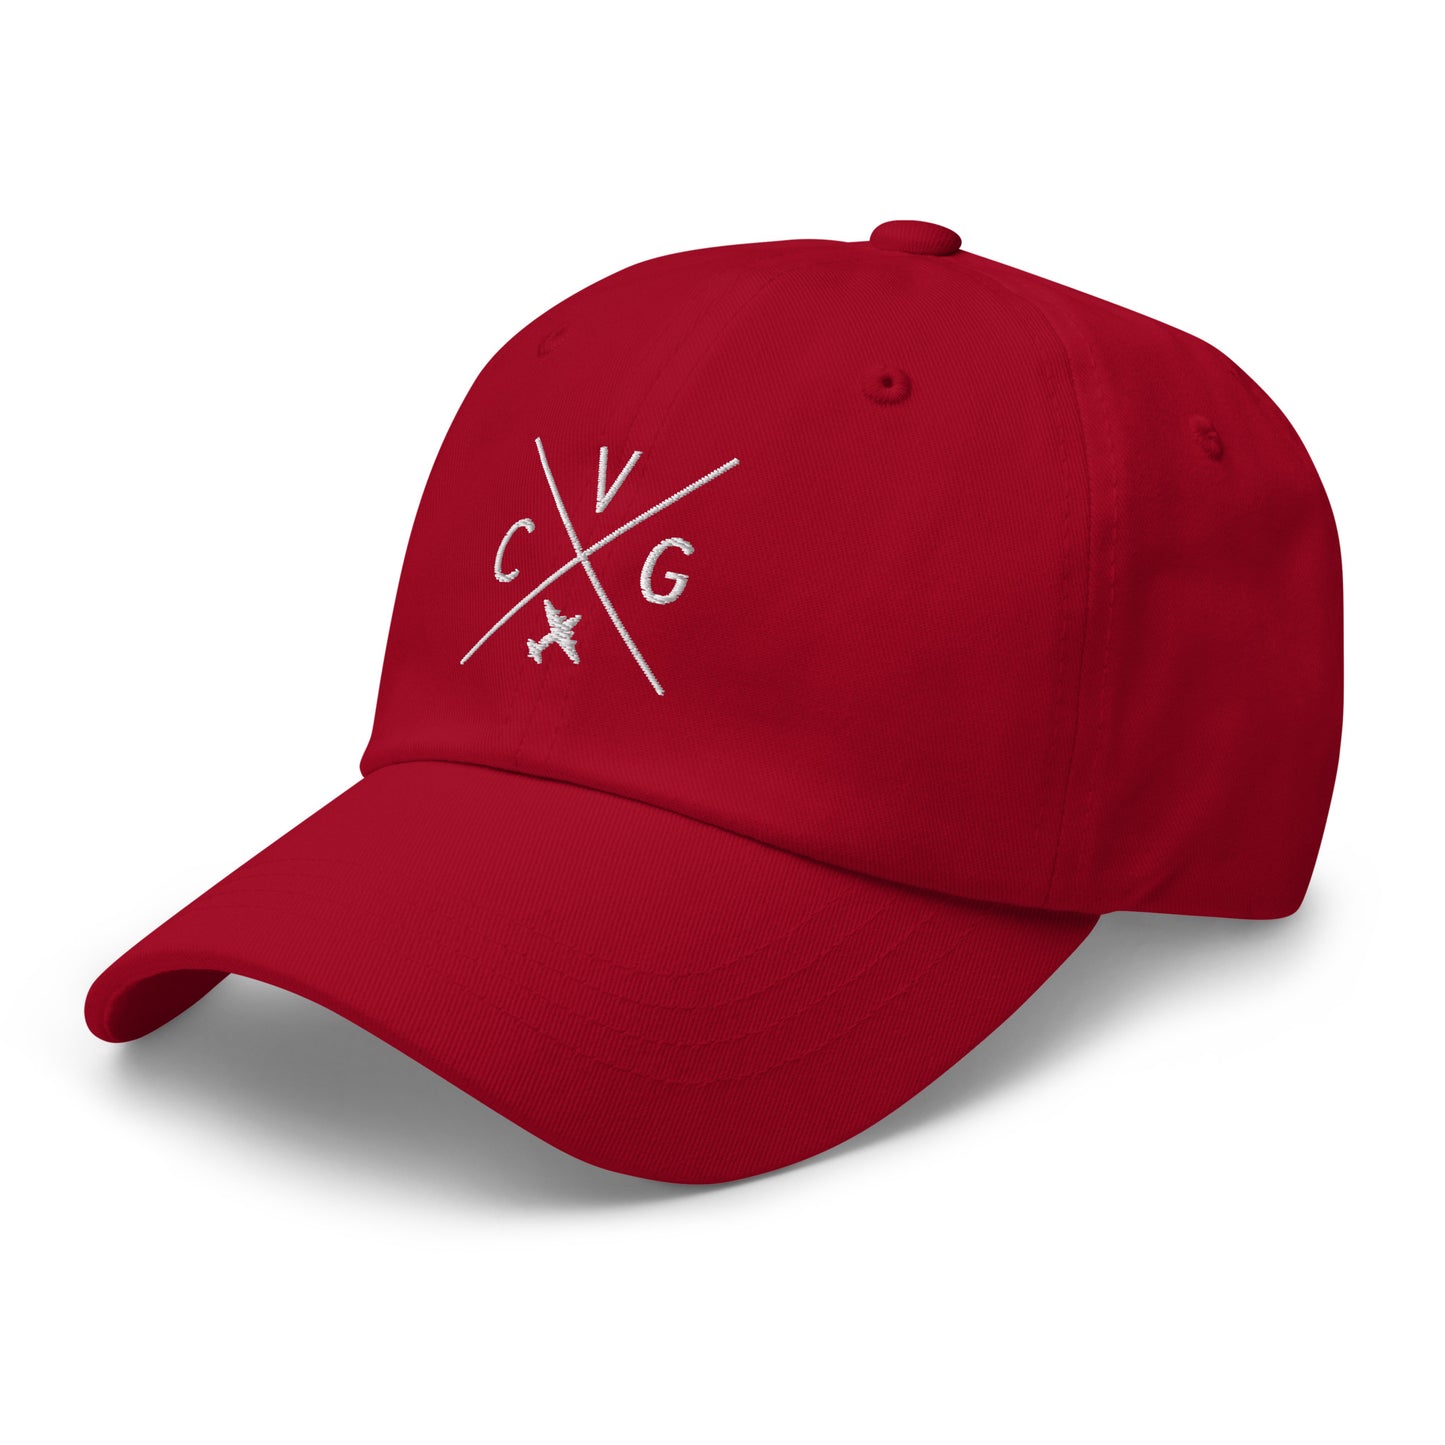 Crossed-X Dad Hat - White • CVG Cincinnati • YHM Designs - Image 21